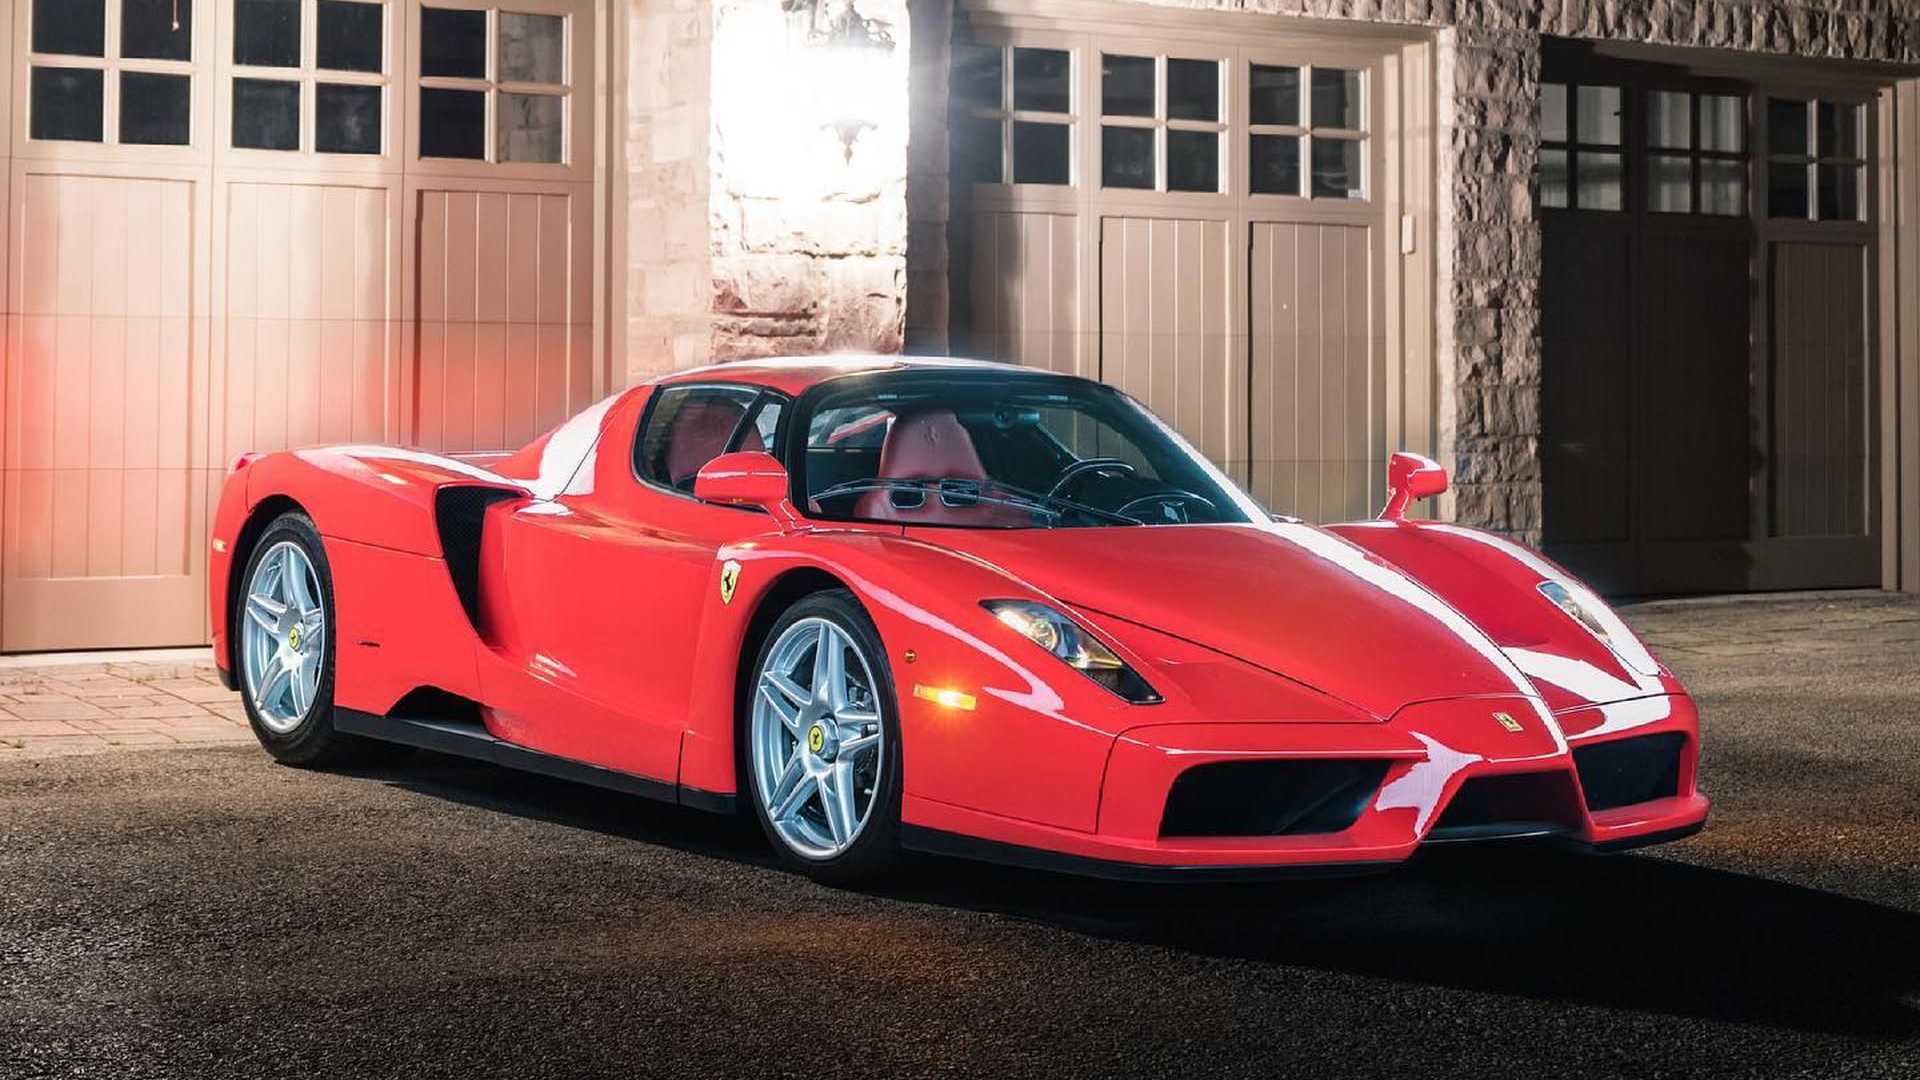 Sau 15 năm sử dụng và hơn 500km, Ferrari Enzo được bán lại với giá 3,8 triệu USD - Ảnh 1.